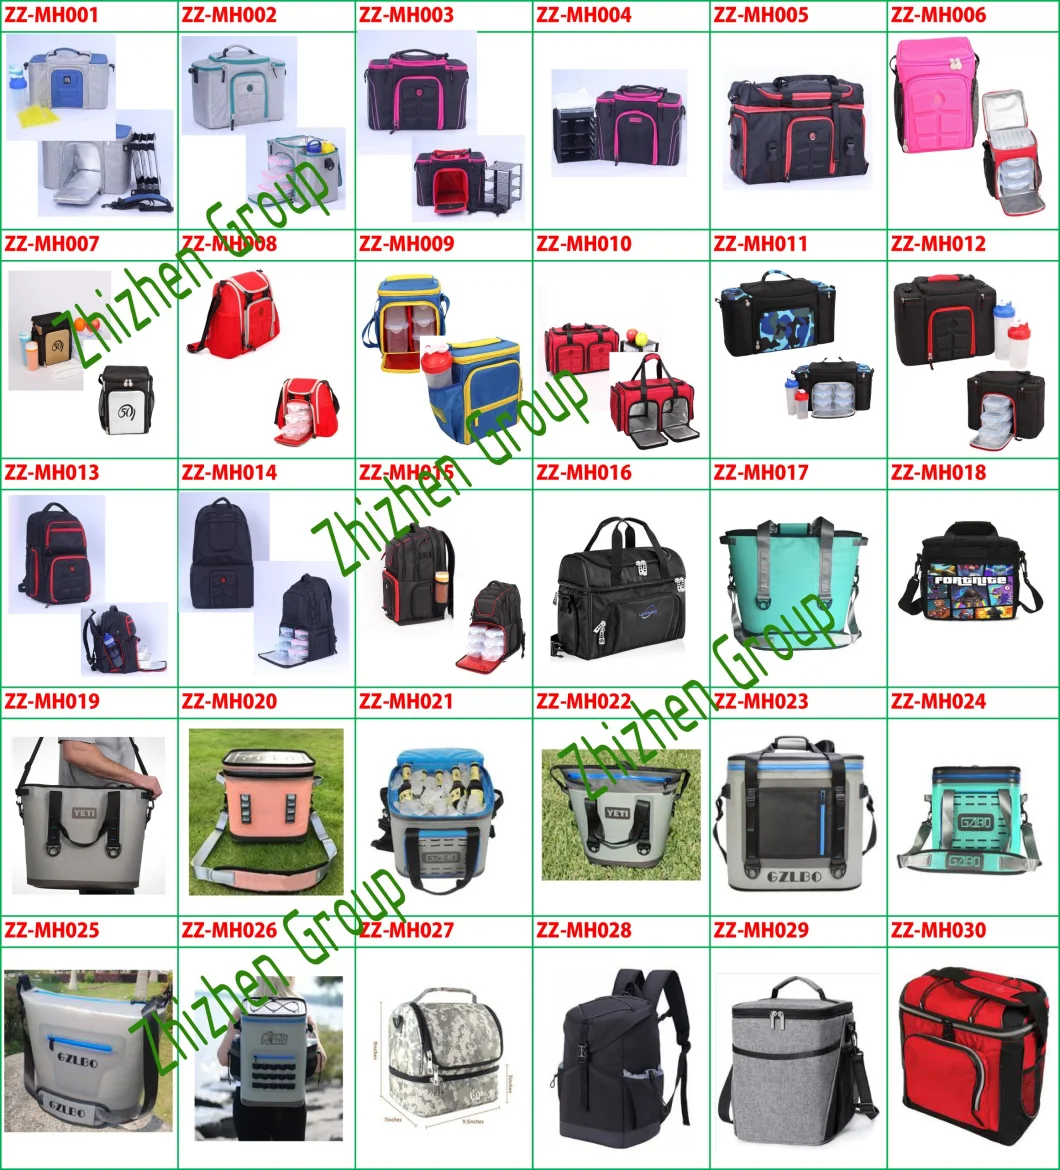 Bagged Milk,Cool Backpacks,Milk Pack,Cooler Tote Bag,Custom Cooler Bags,Custom Insulated Bags,Milk Cooler Bag,Tote Bag,Lunch Bag,Storage Bags,Canvas Tote Bags